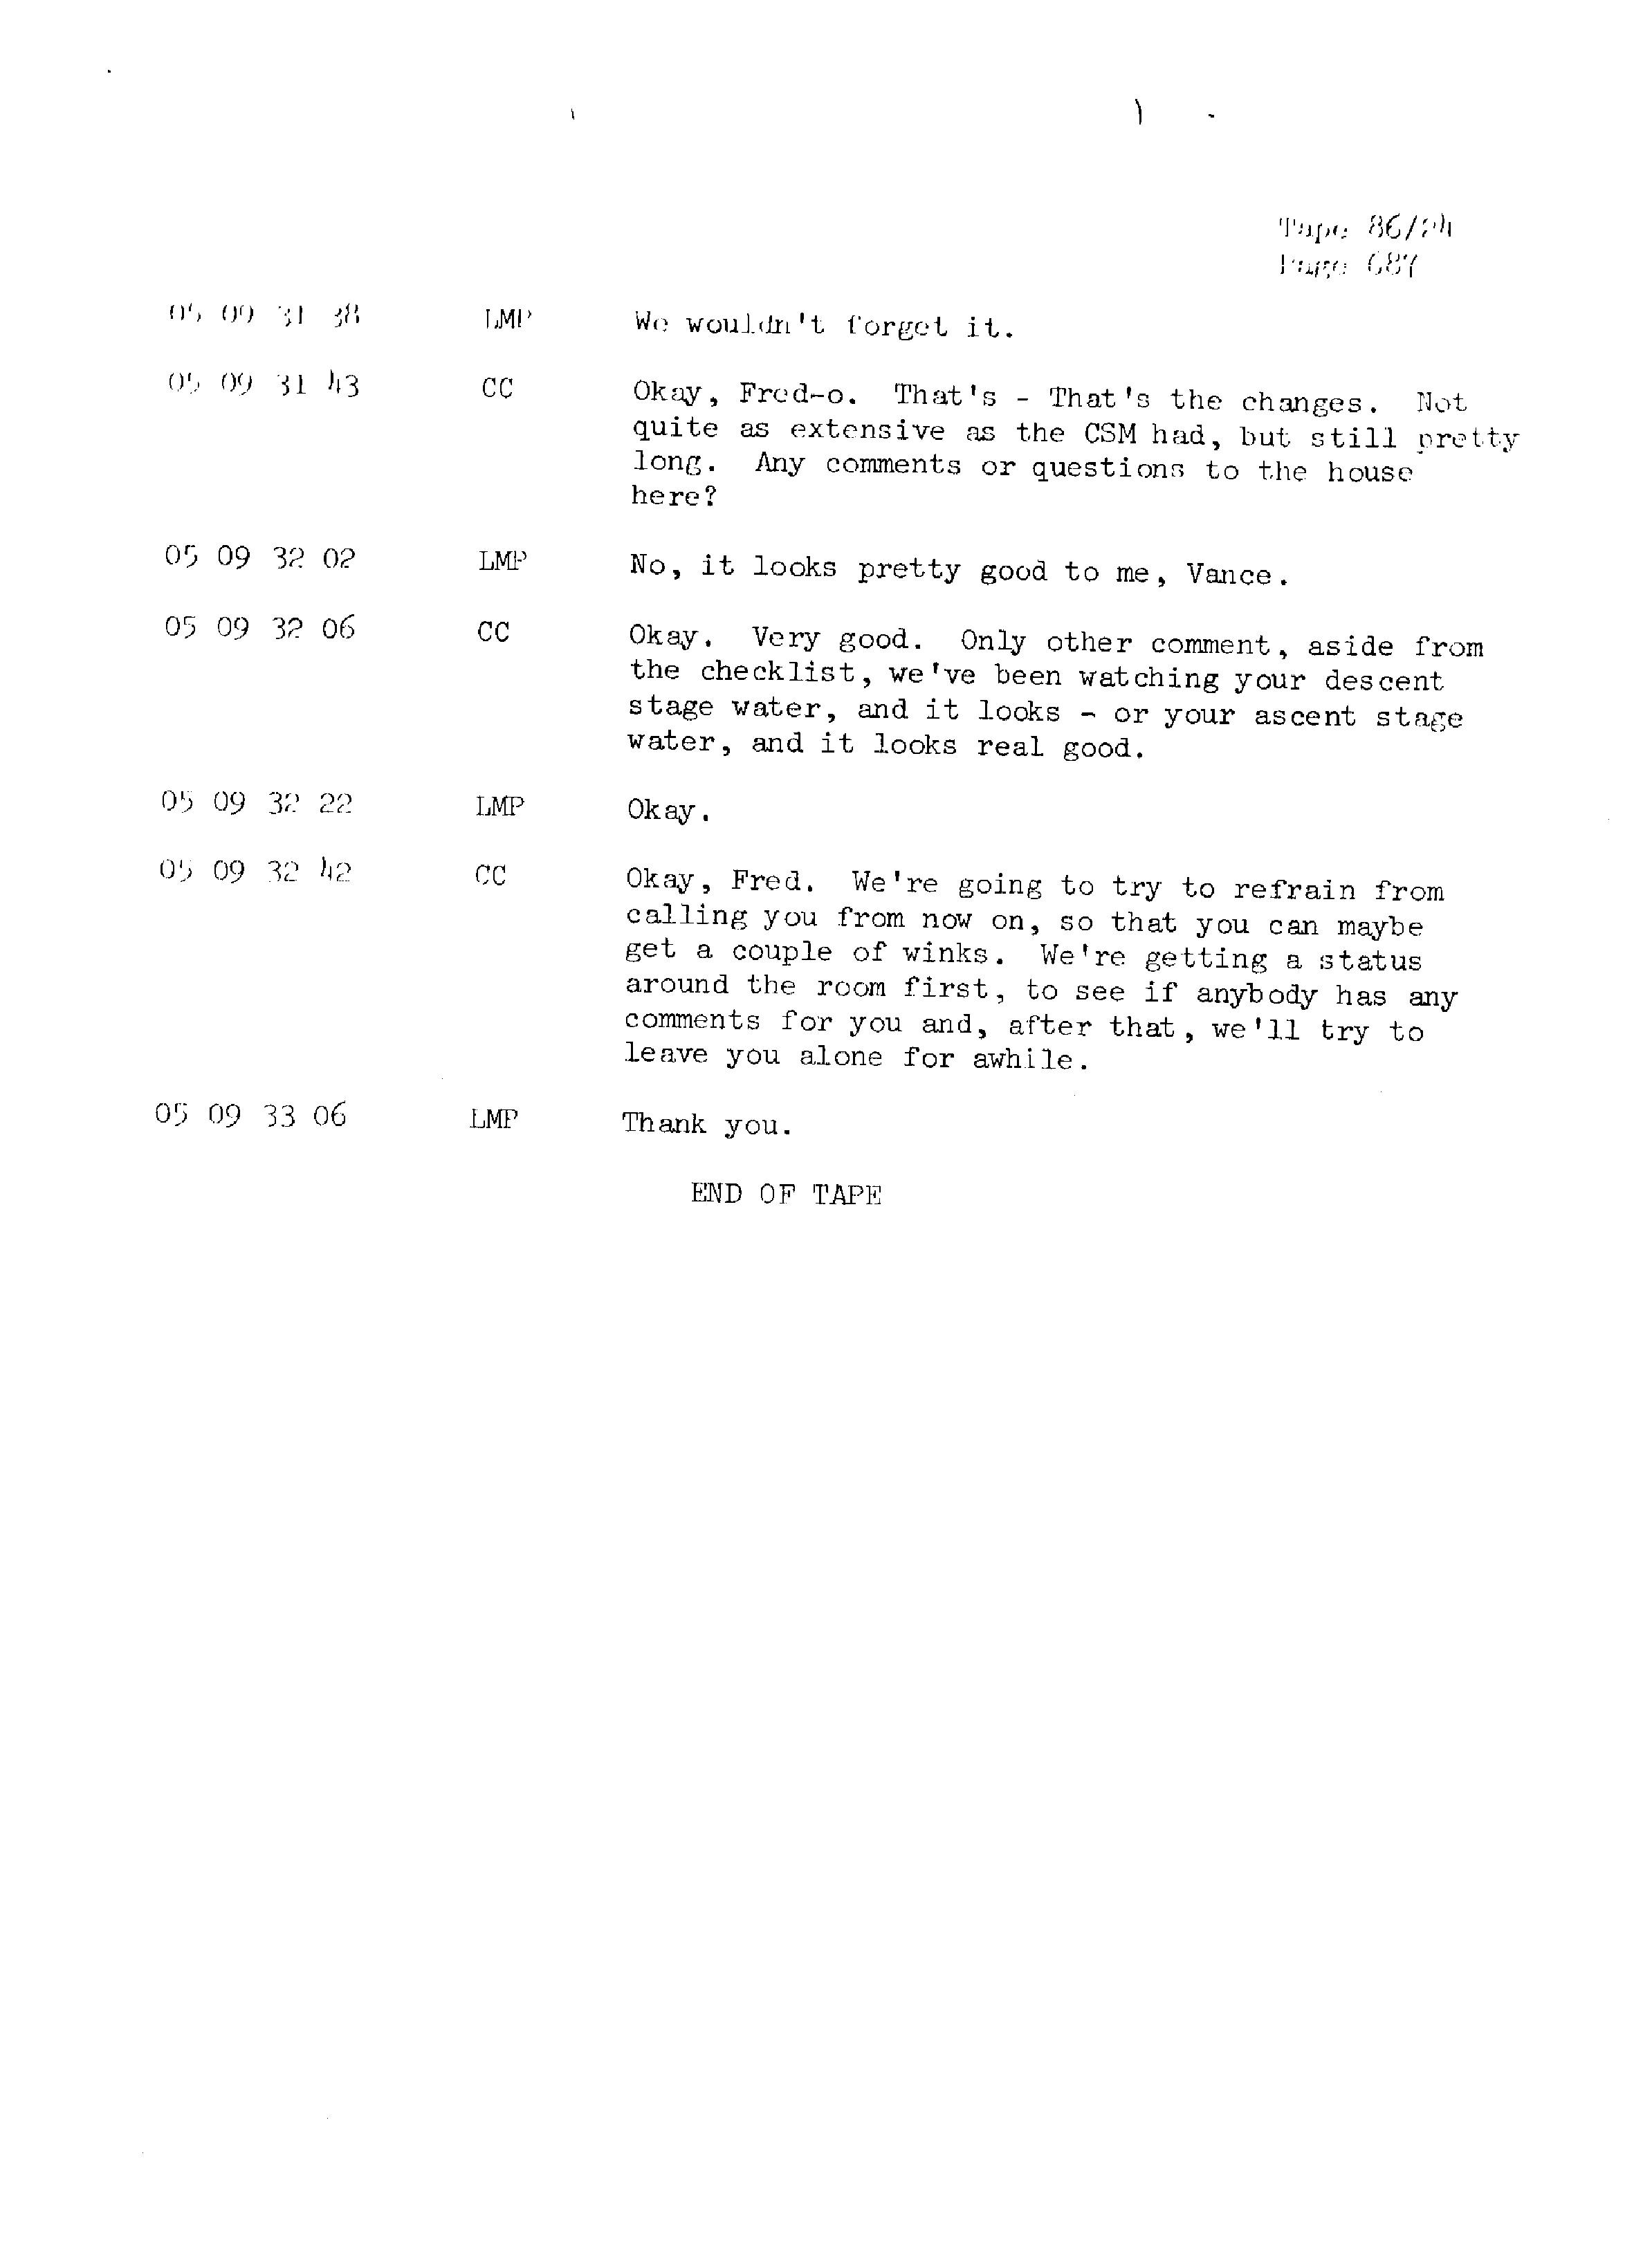 Page 694 of Apollo 13’s original transcript